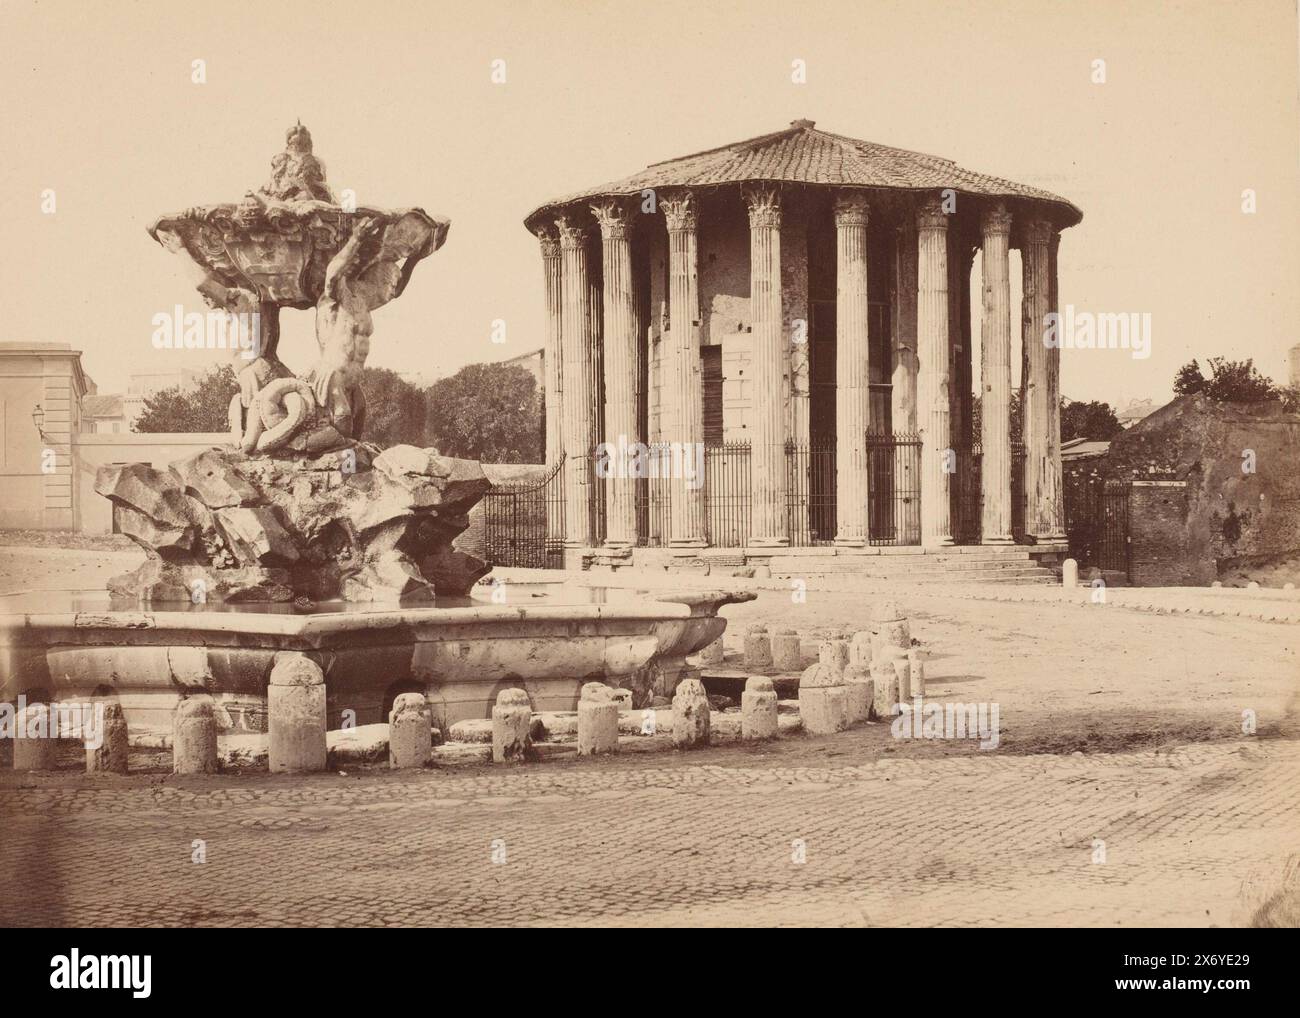 Temple d'Hercule Invictus au Forum Boarium à Rome, Italie, photographie, anonyme, d'après sculpture par : anonyme, Rome, 1851 - 1900, carton, impression albumine, hauteur, 244 mm × largeur, 330 mm Banque D'Images